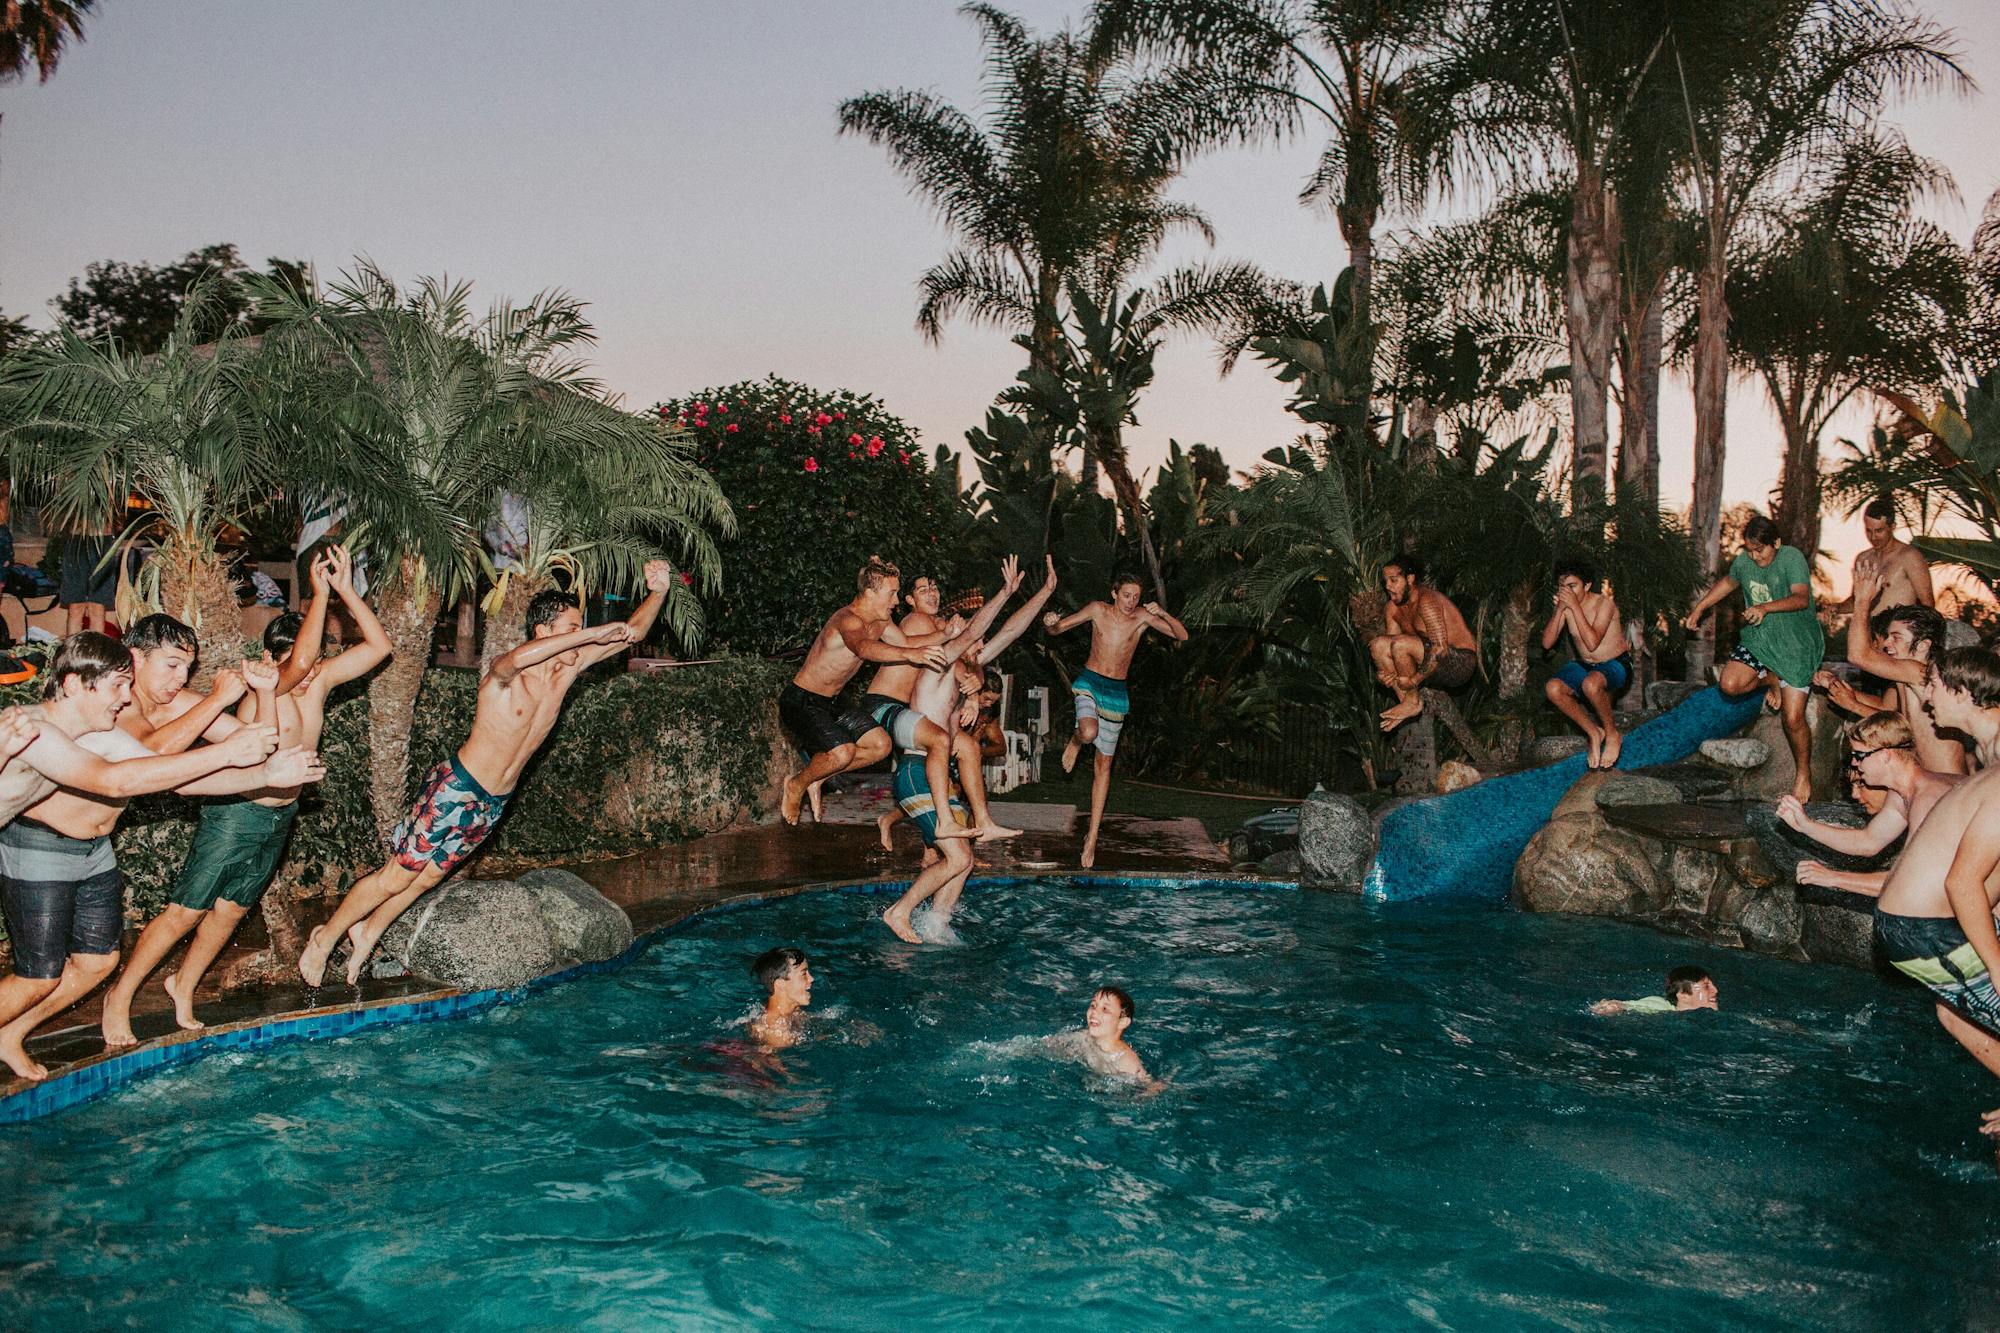 Impreza przy basenie: Młodzi ludzie bawią się na całego w basenie i skaczą do wody.